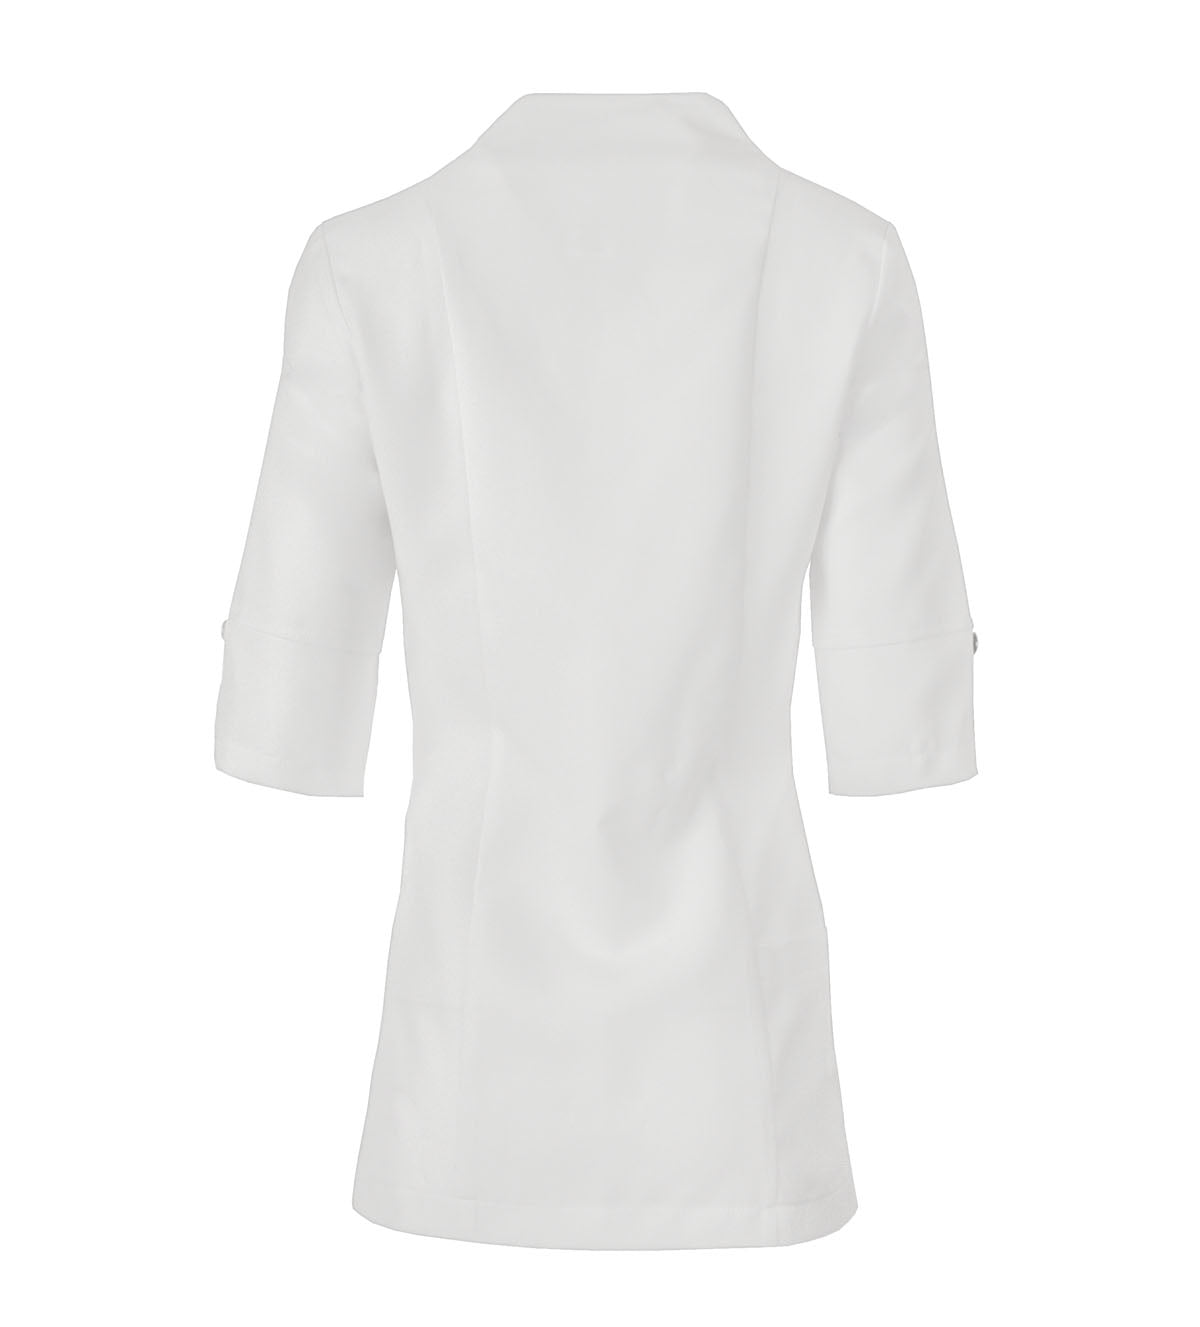 Sarrau stylisé pour femme avec col cygne Uniformes Sélect #8577 blanc dos